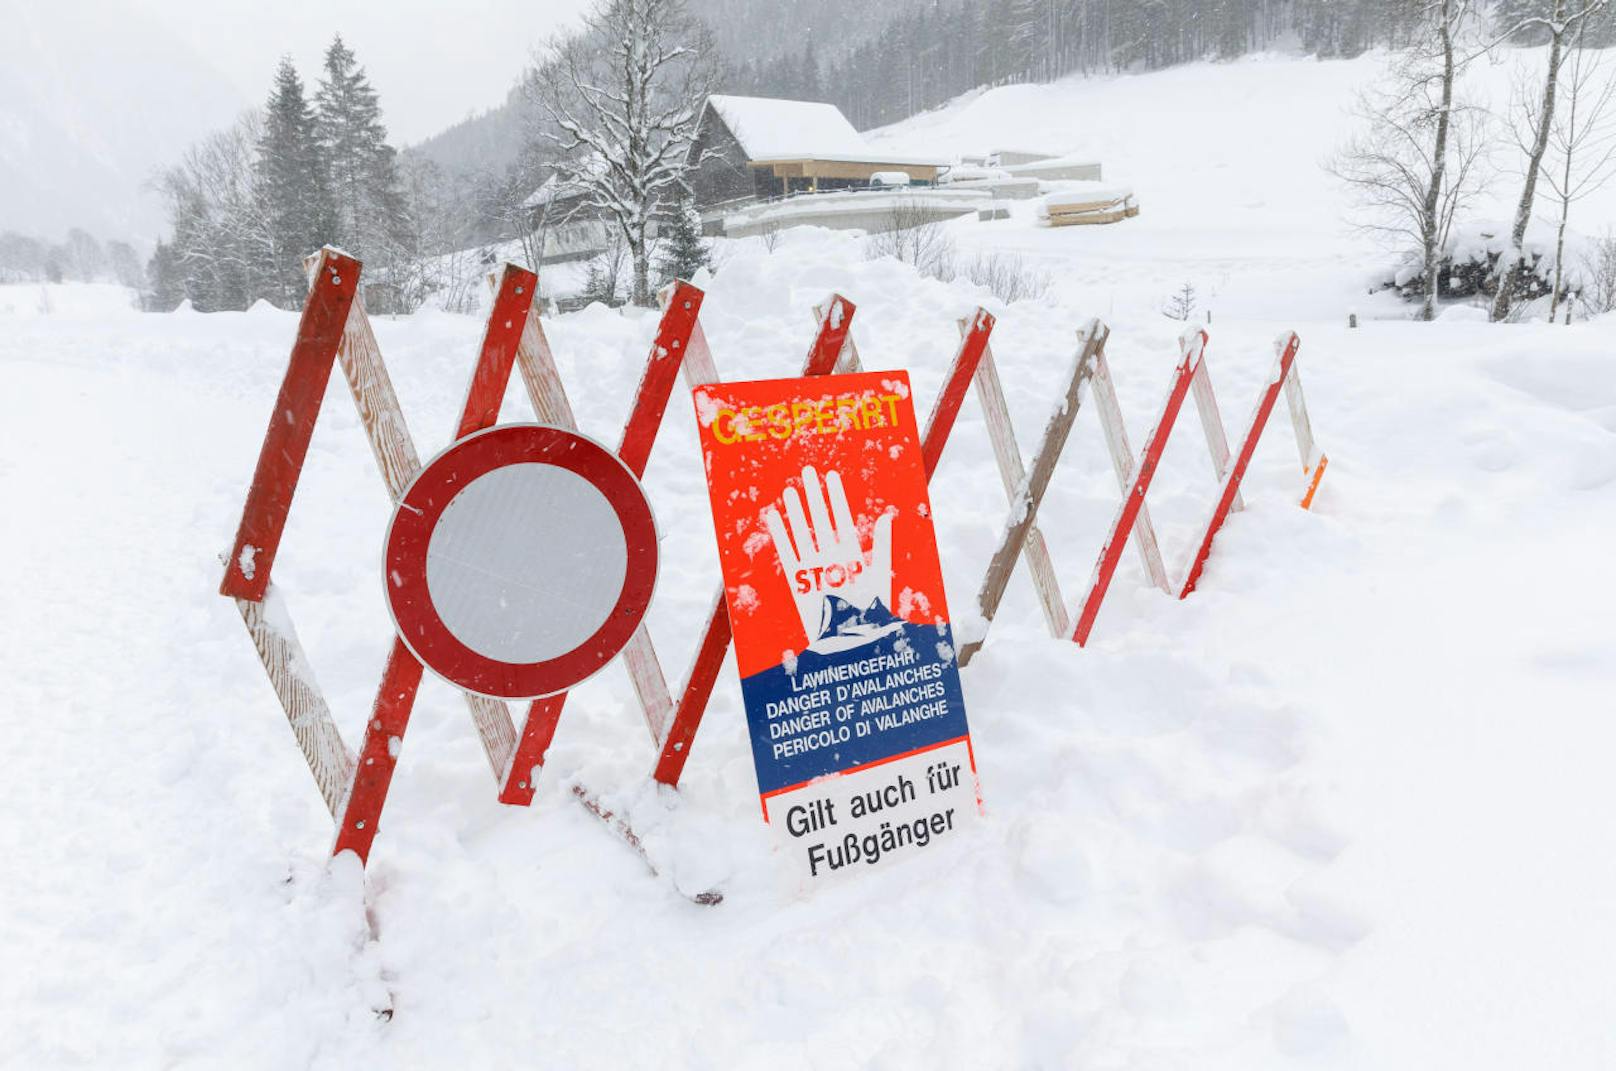 In der Steiermark sorgte der heftige Schneefall für Behinderungen im Straßenverkehr. So musste etwa die Obertalstraße bei Schladming - wie viele andere - aufgrund von Lawinengefahr gesperrt werden.